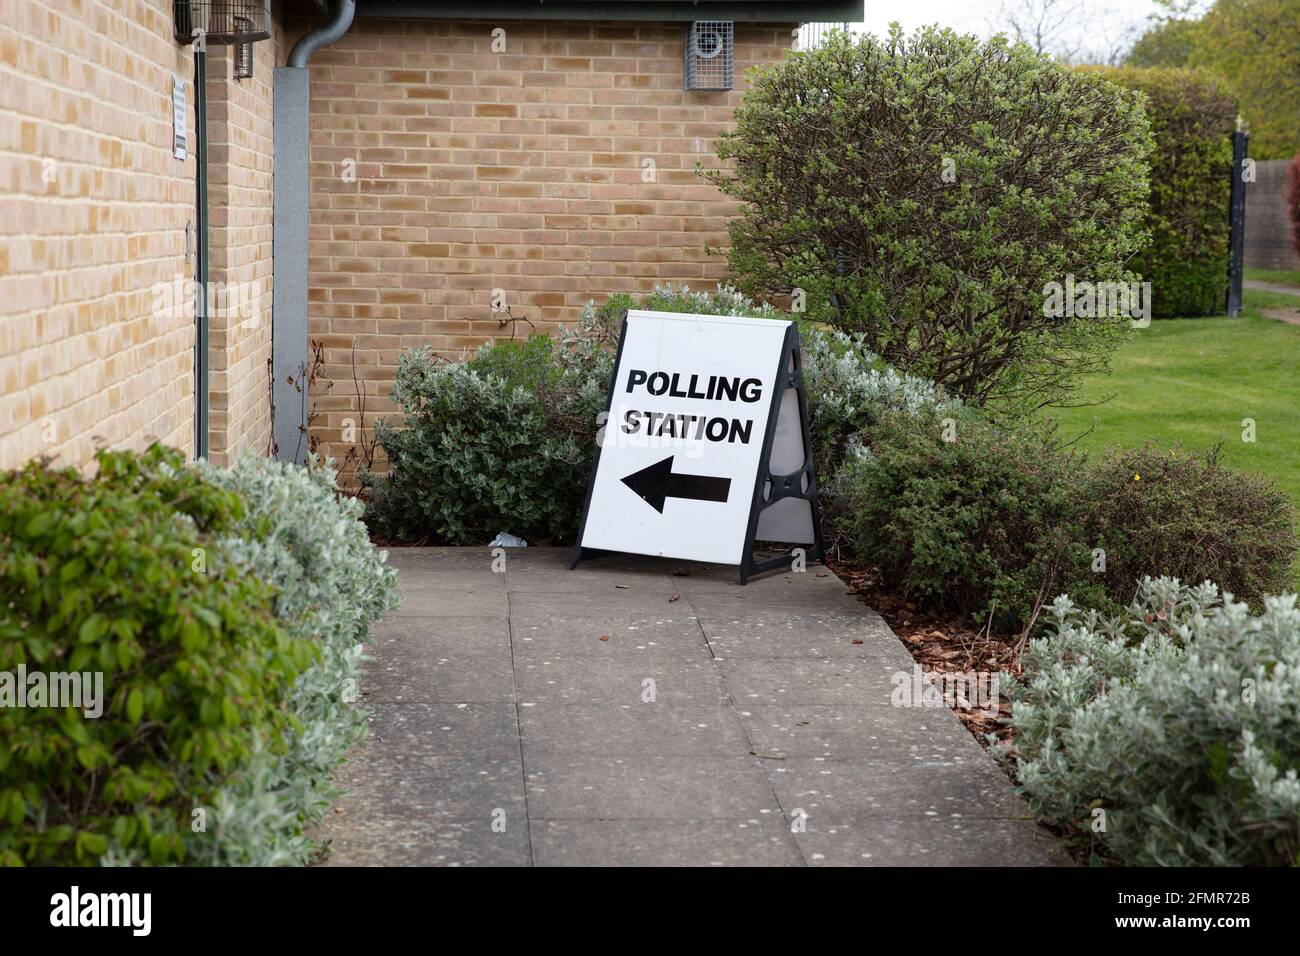 Wahllokal vor dem Eingang zu einer politischen Abstimmung Standort in Großbritannien Stockfoto